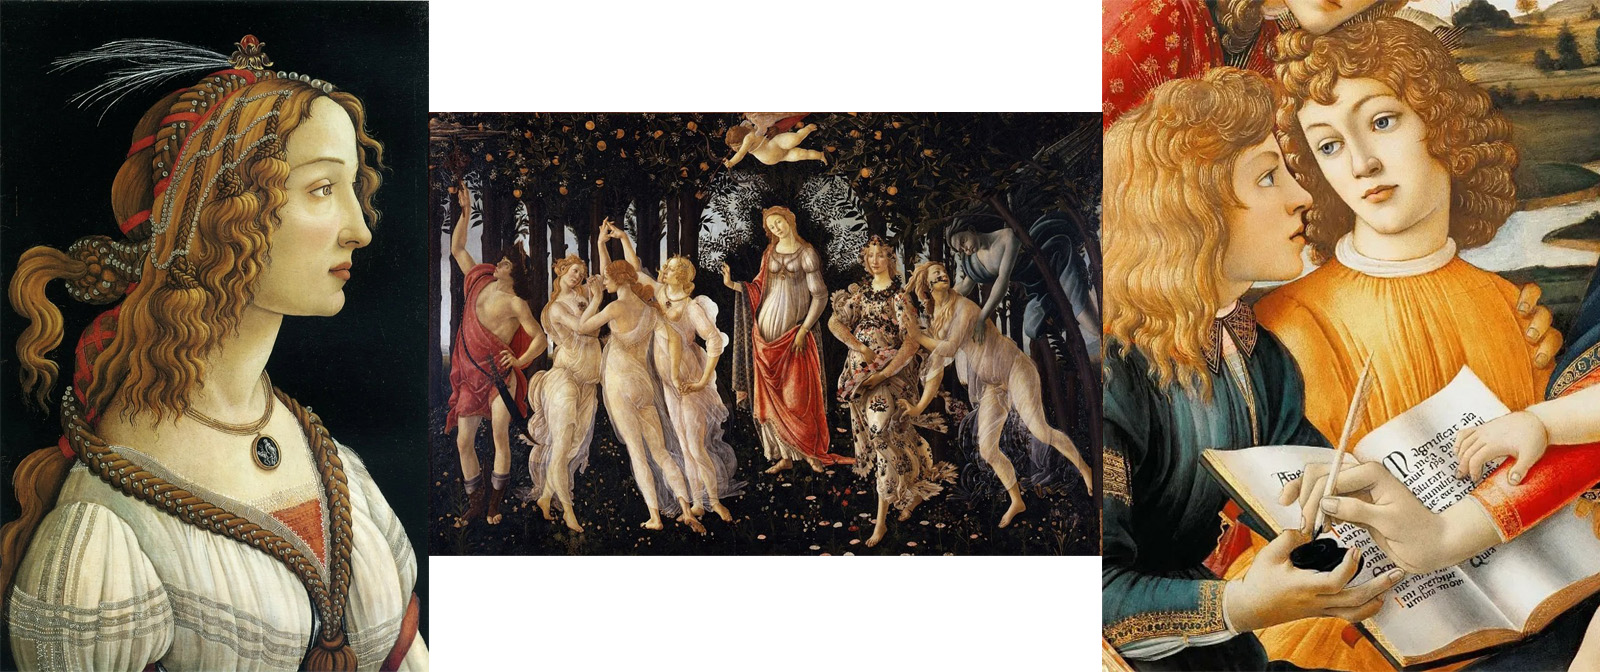 Первый среди художников Возрождения стал писать обнажённую натуру. Каким был Боттичелли в обычной жизни?